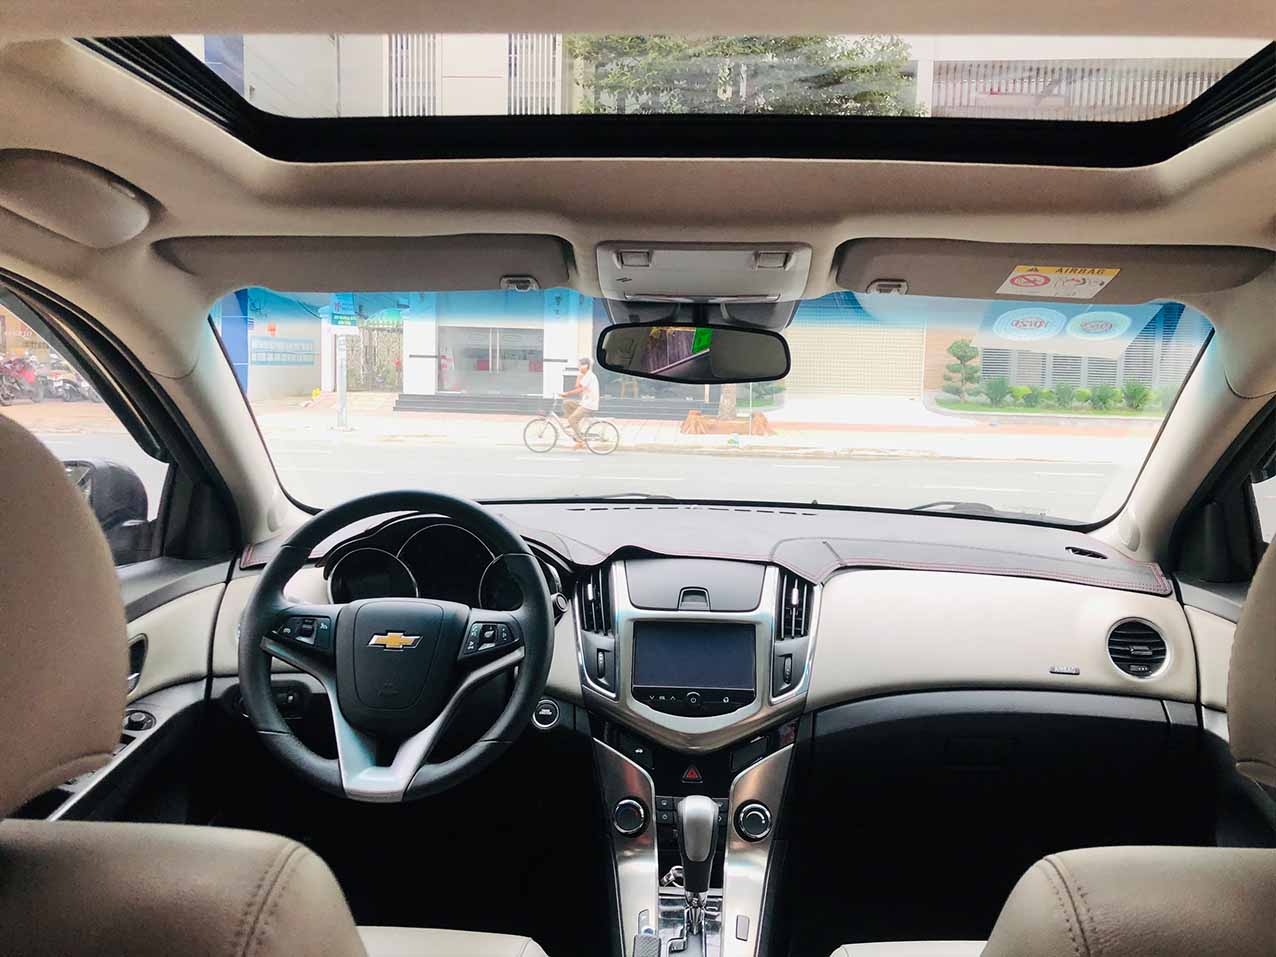 quangpham bán xe Sedan CHEVROLET Cruze LTZ 2016 màu Đen giá 366 triệu ở Hà  Nội